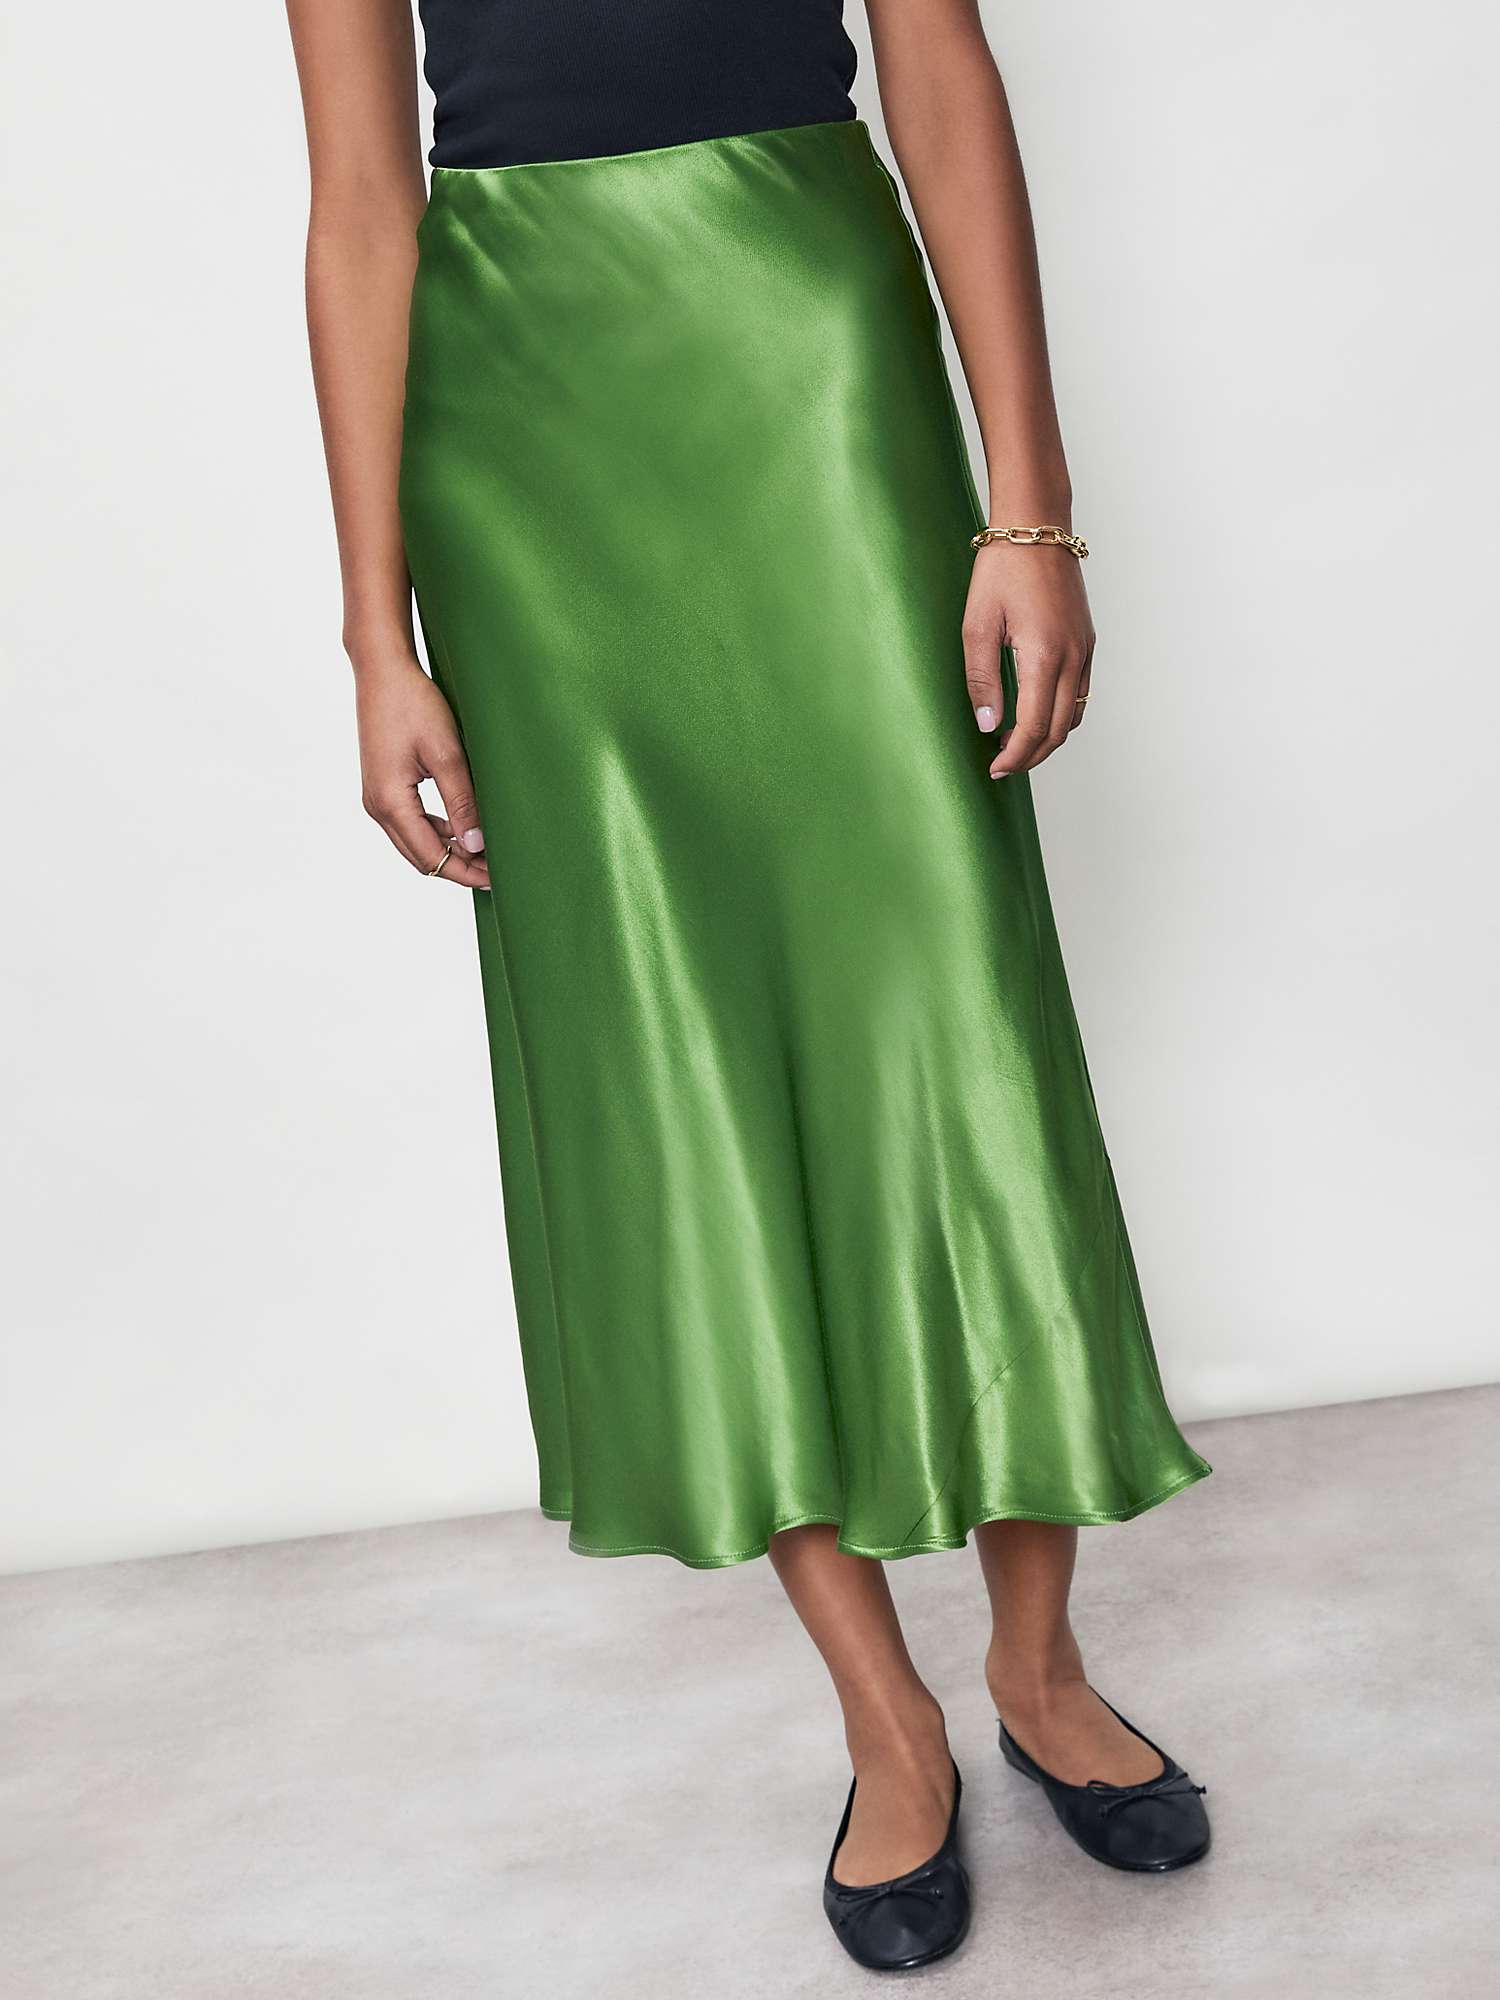 Finery Evelyn Satin Slip Midi Skirt, Green at John Lewis & Partners